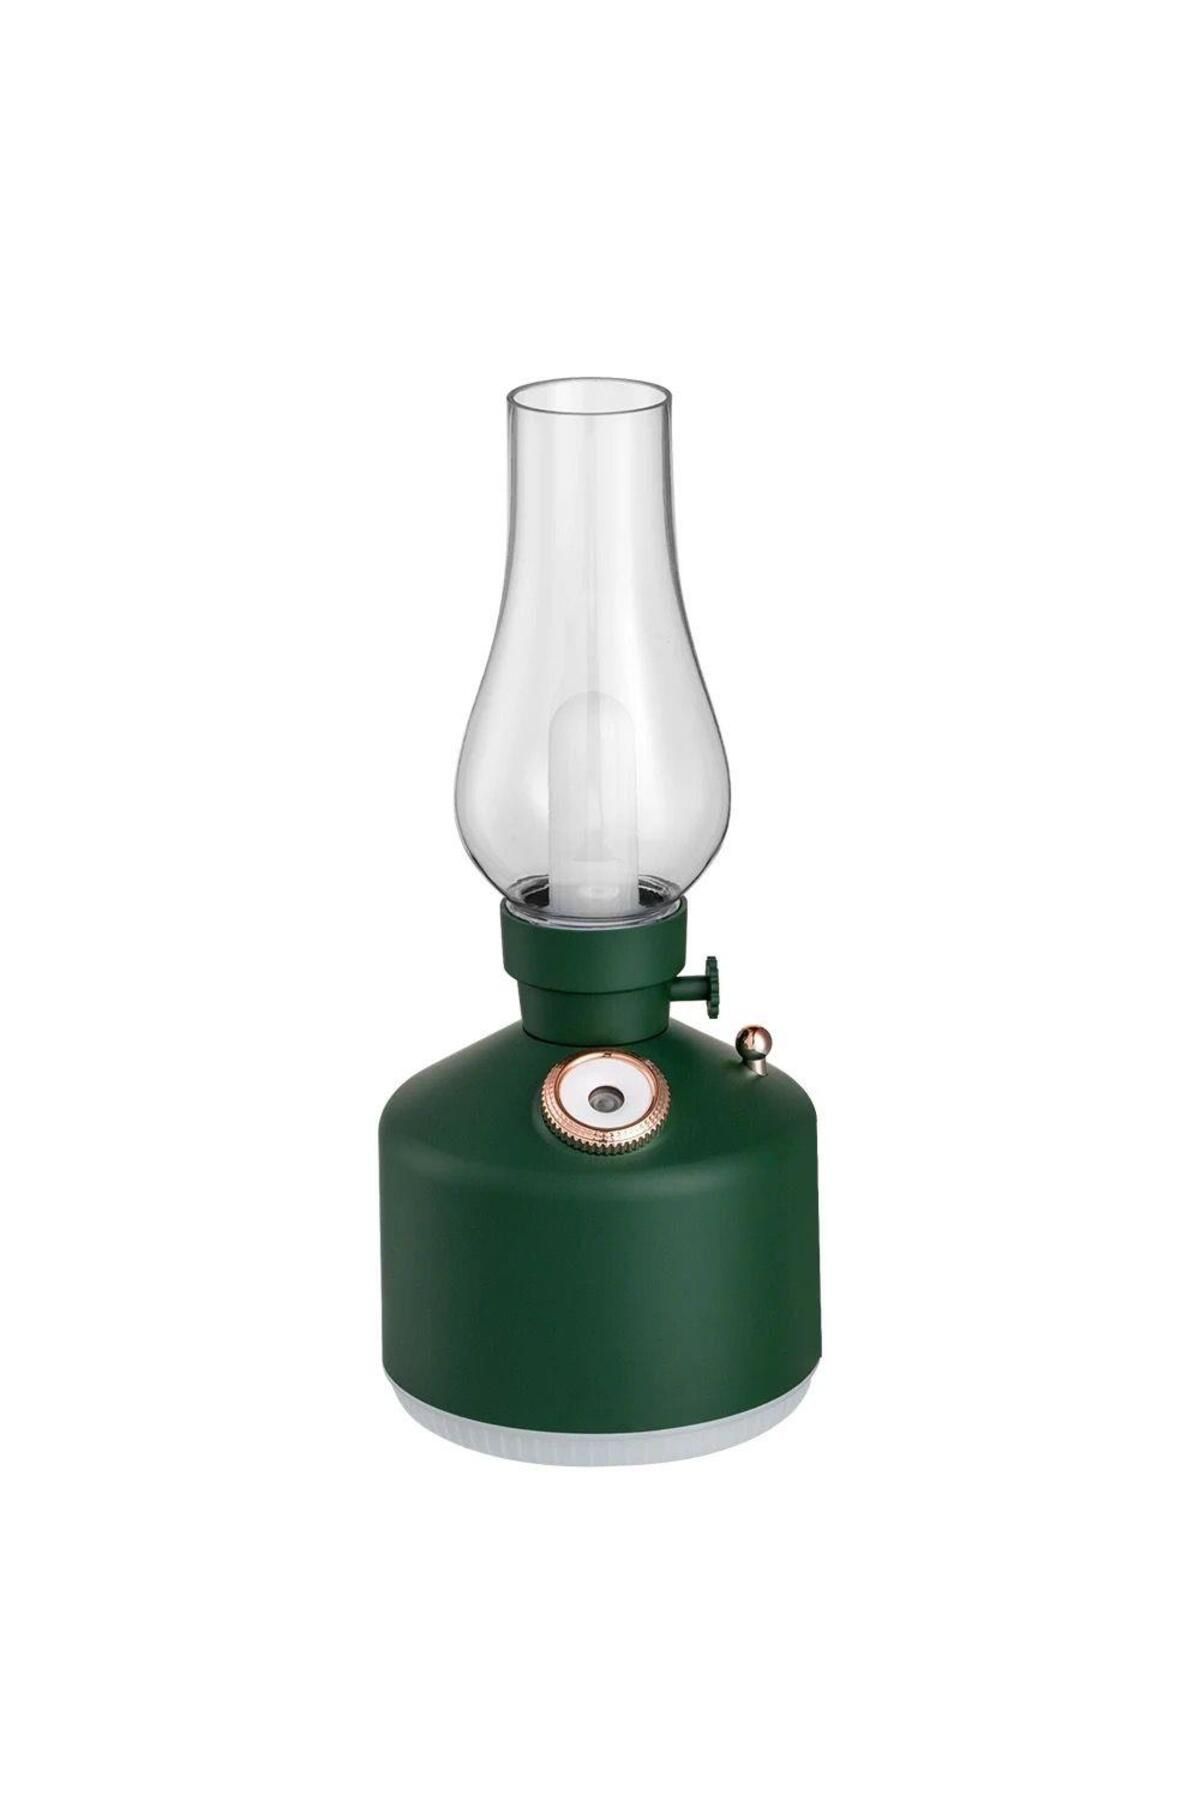 ROSSEV Humidifier Şarj Edilebilir Yeşil Dekoratif Lamba Kandil 300ml